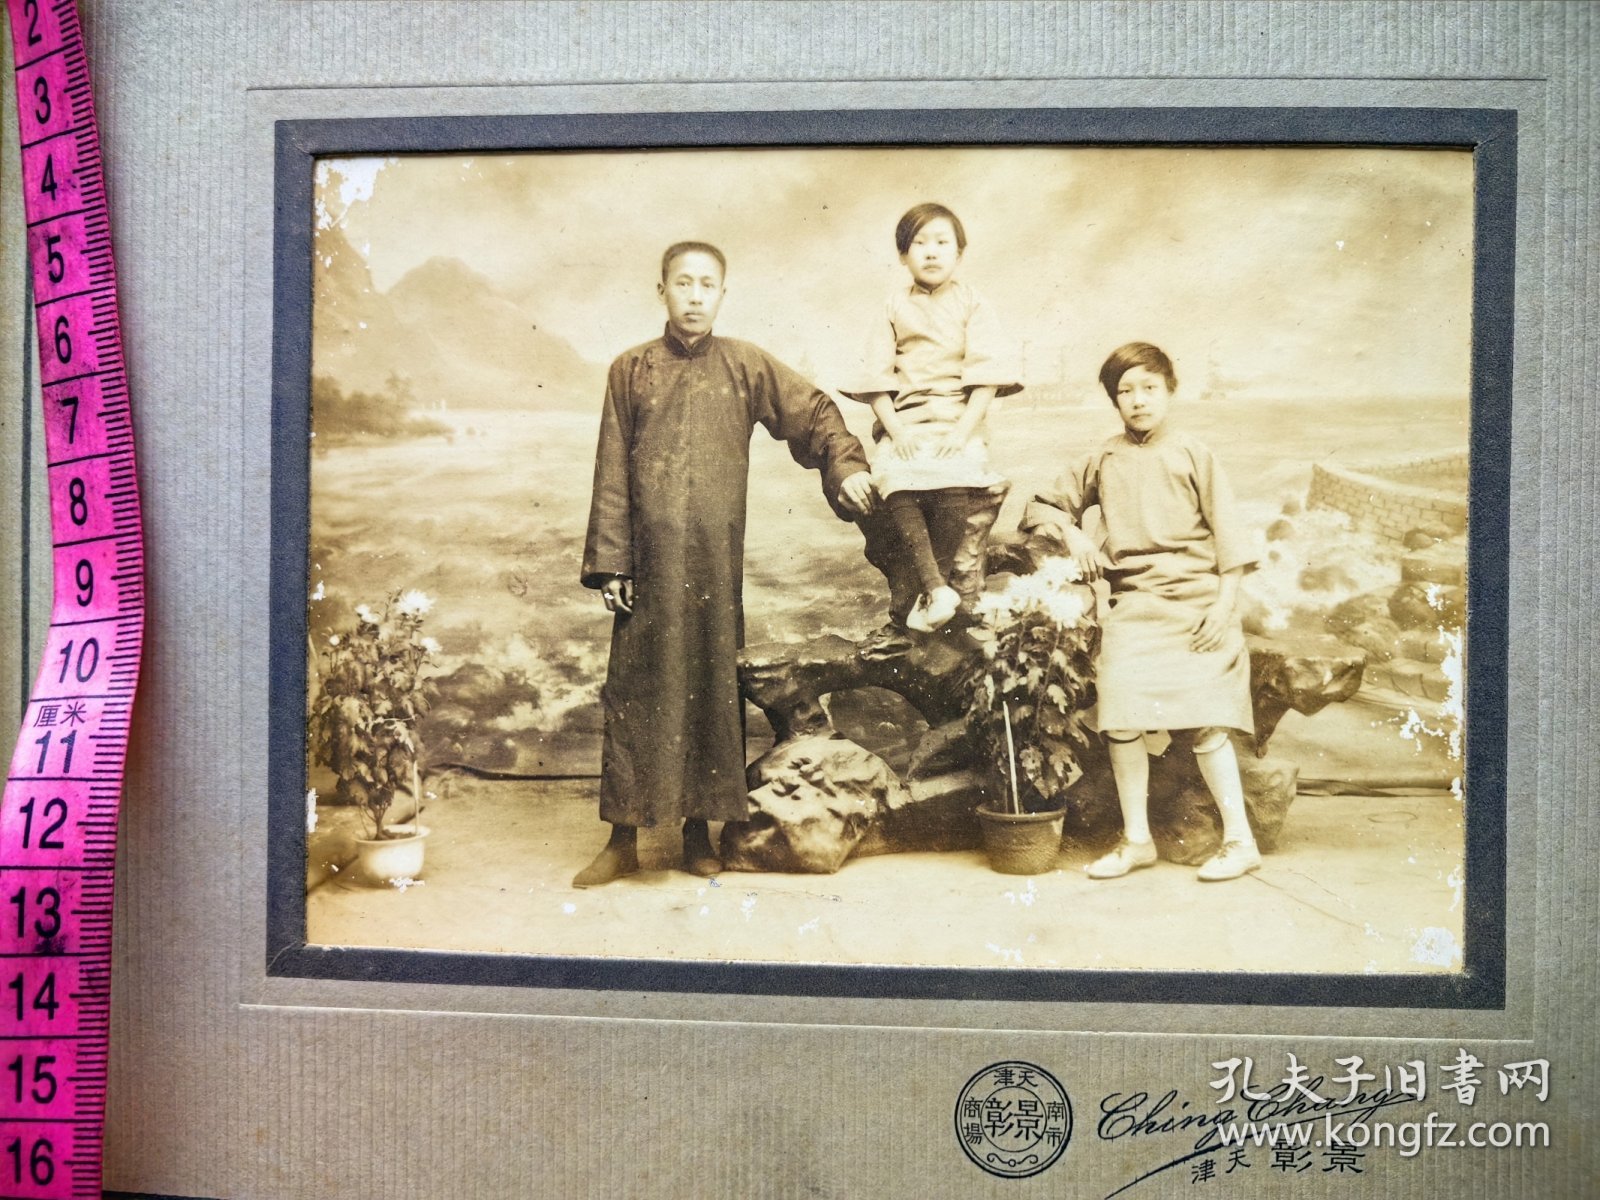 民国时期一家三口合影，小美女坐在假山上。天津景彰照相馆。底板考究精美。